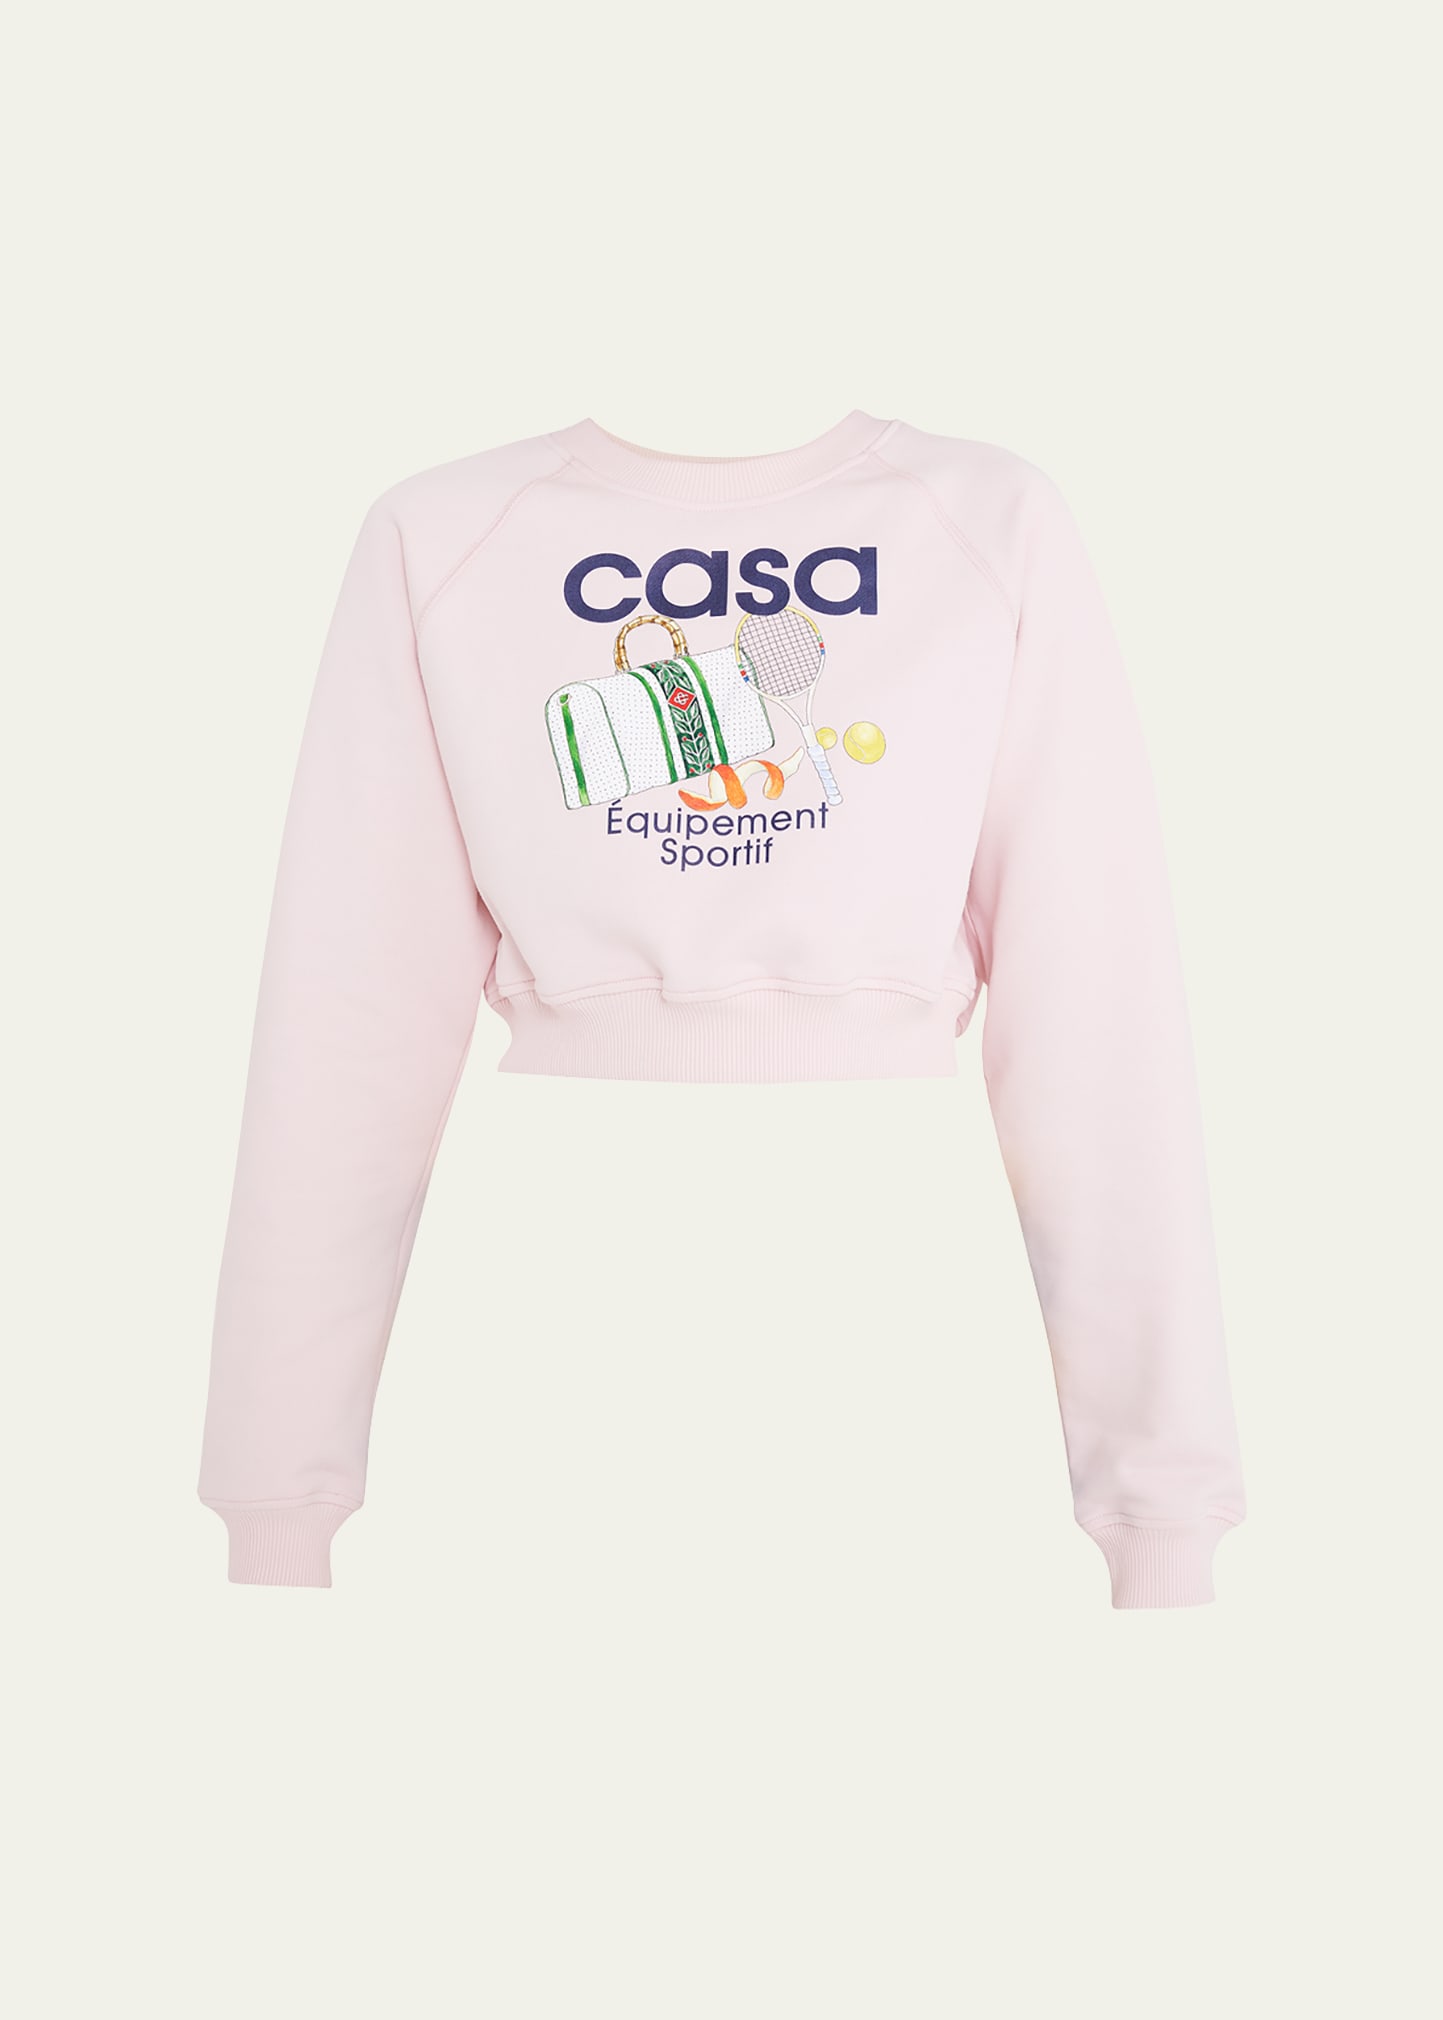 Shop Casablanca Equipement Sportif Printed Cropped Sweatshirt